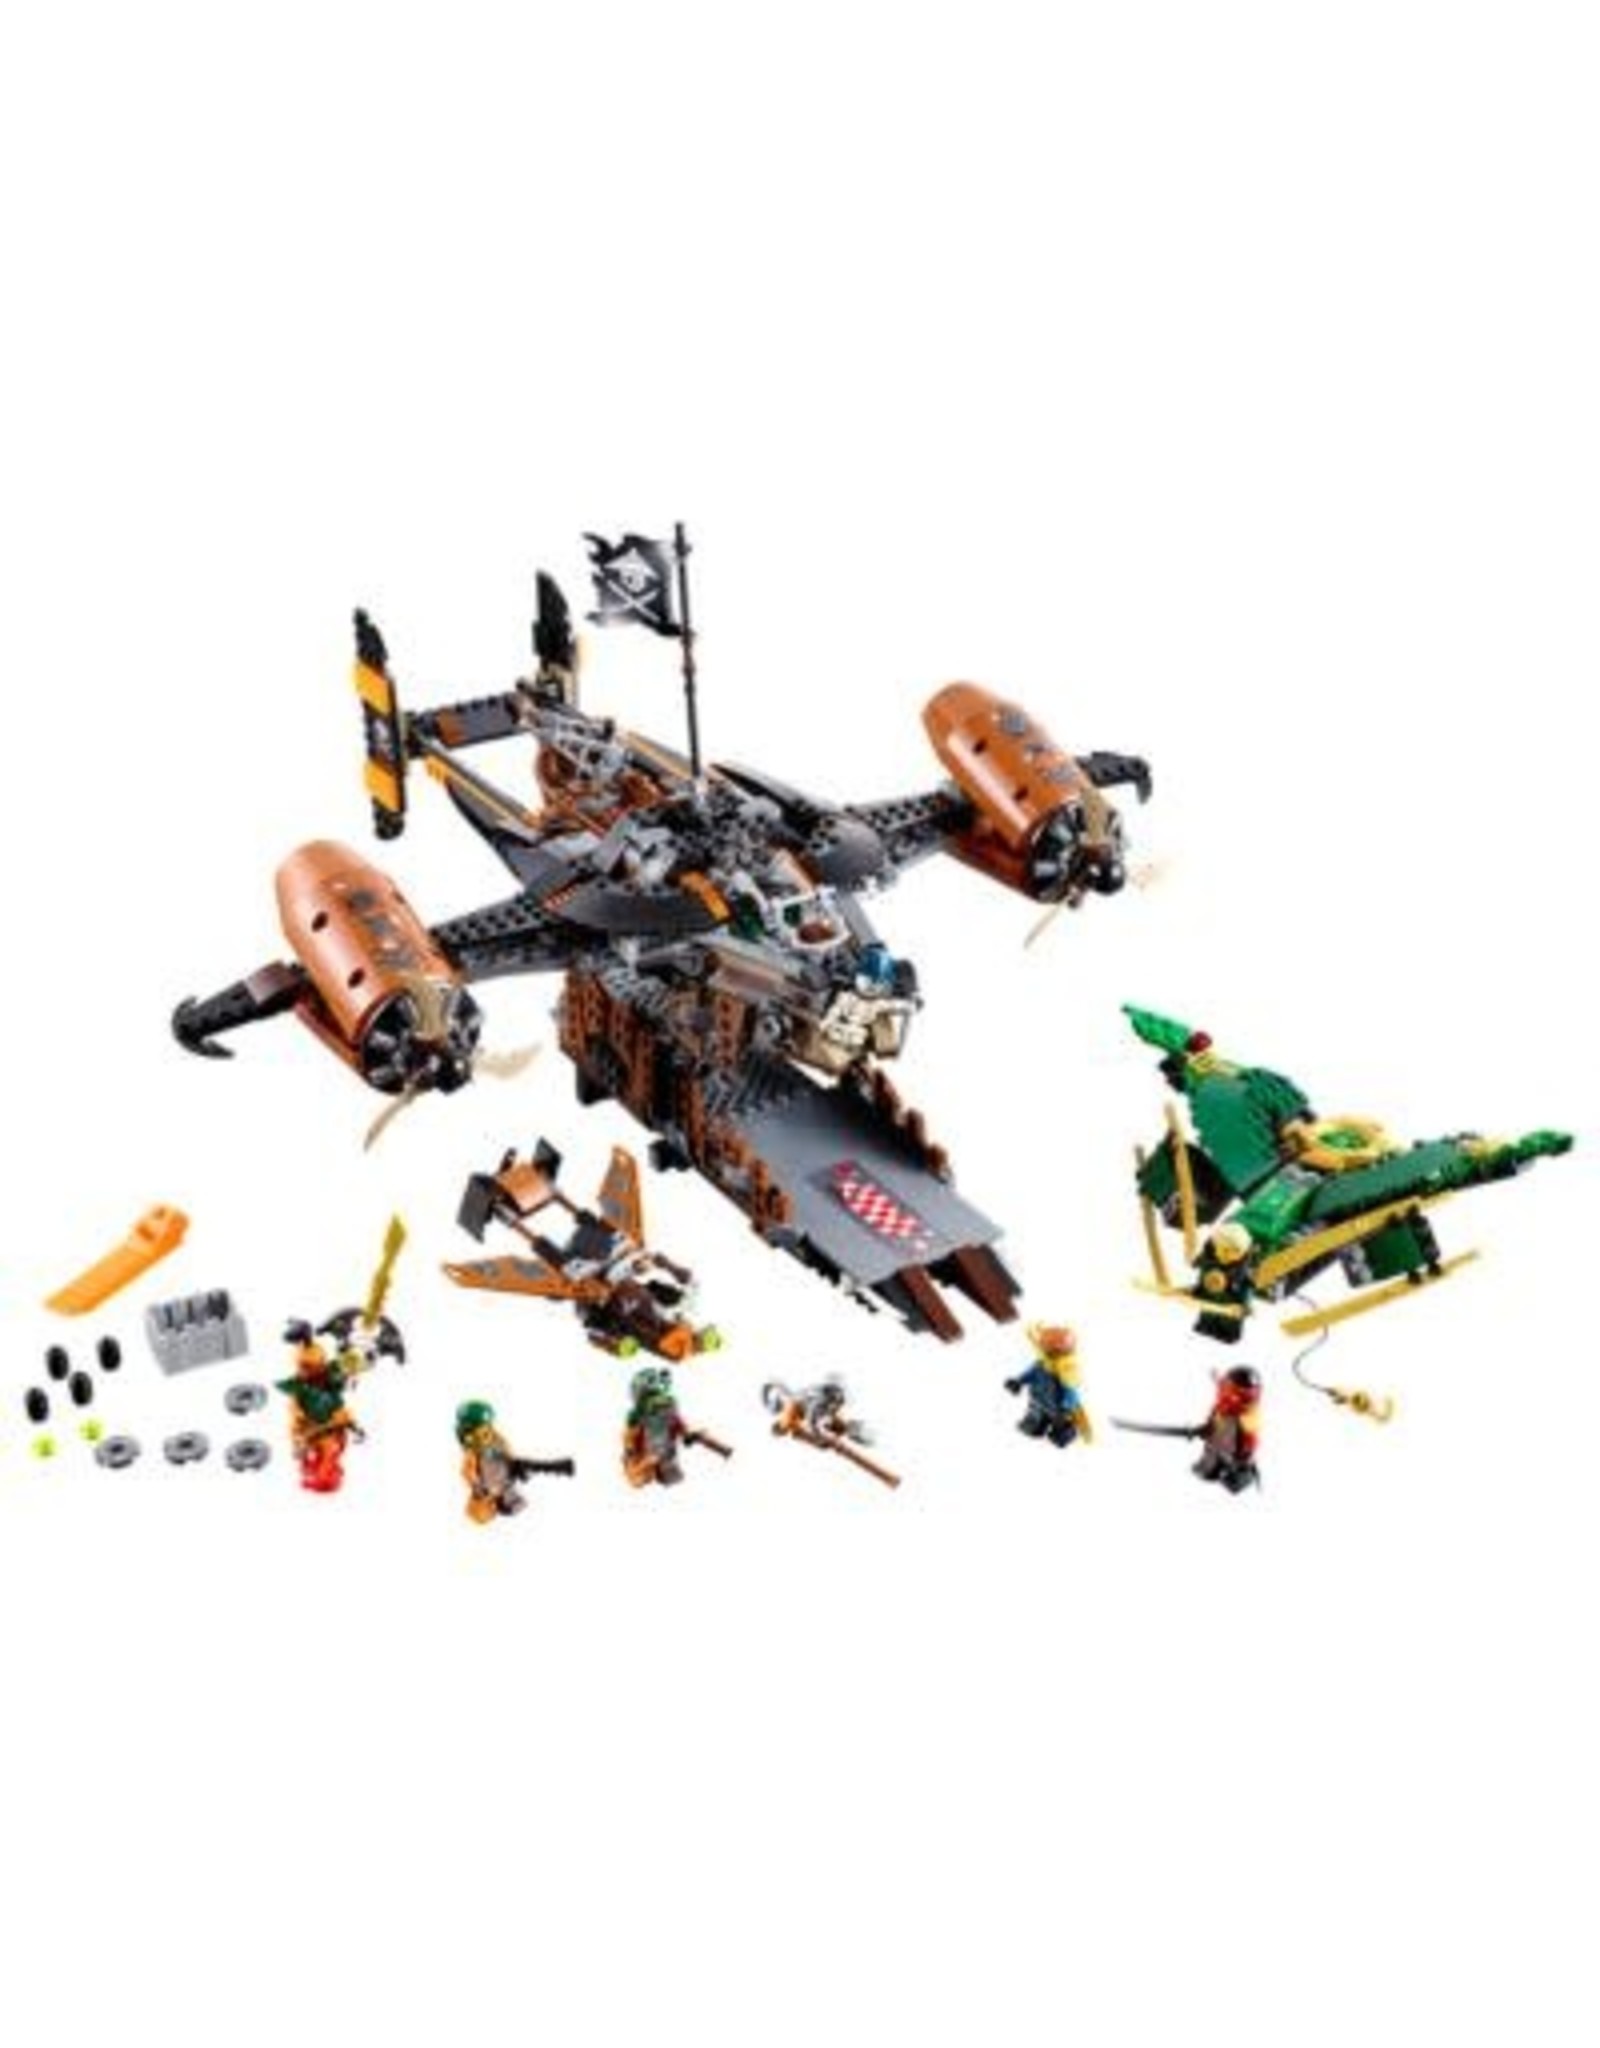 LEGO Lego Ninjago 70605 Misfortune's Keep